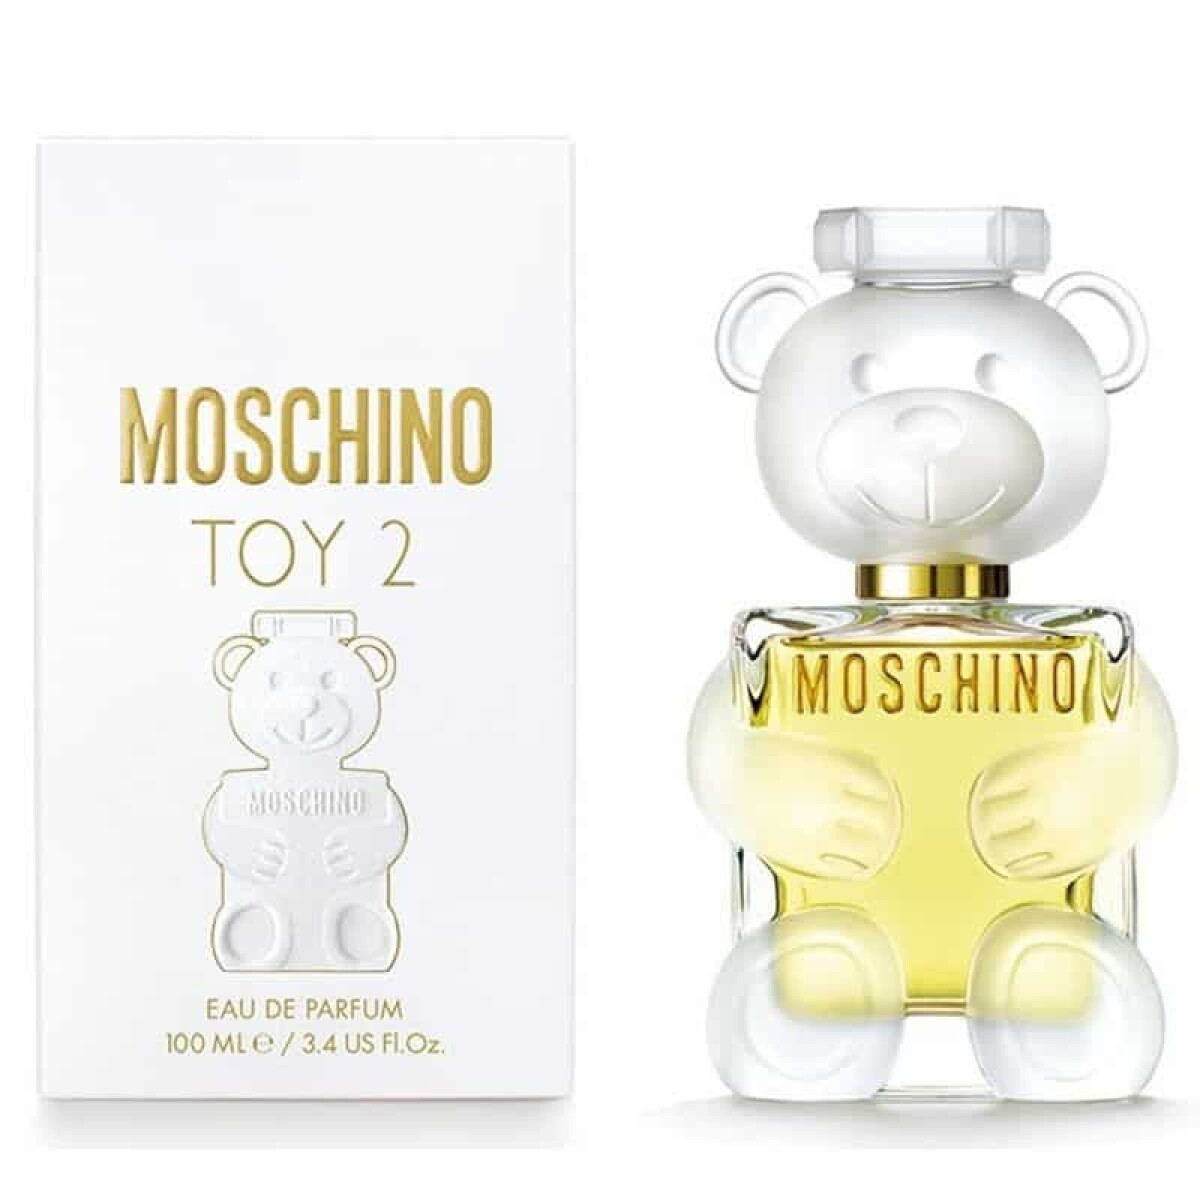 Moschino Toy 2 edp - 100 ml 